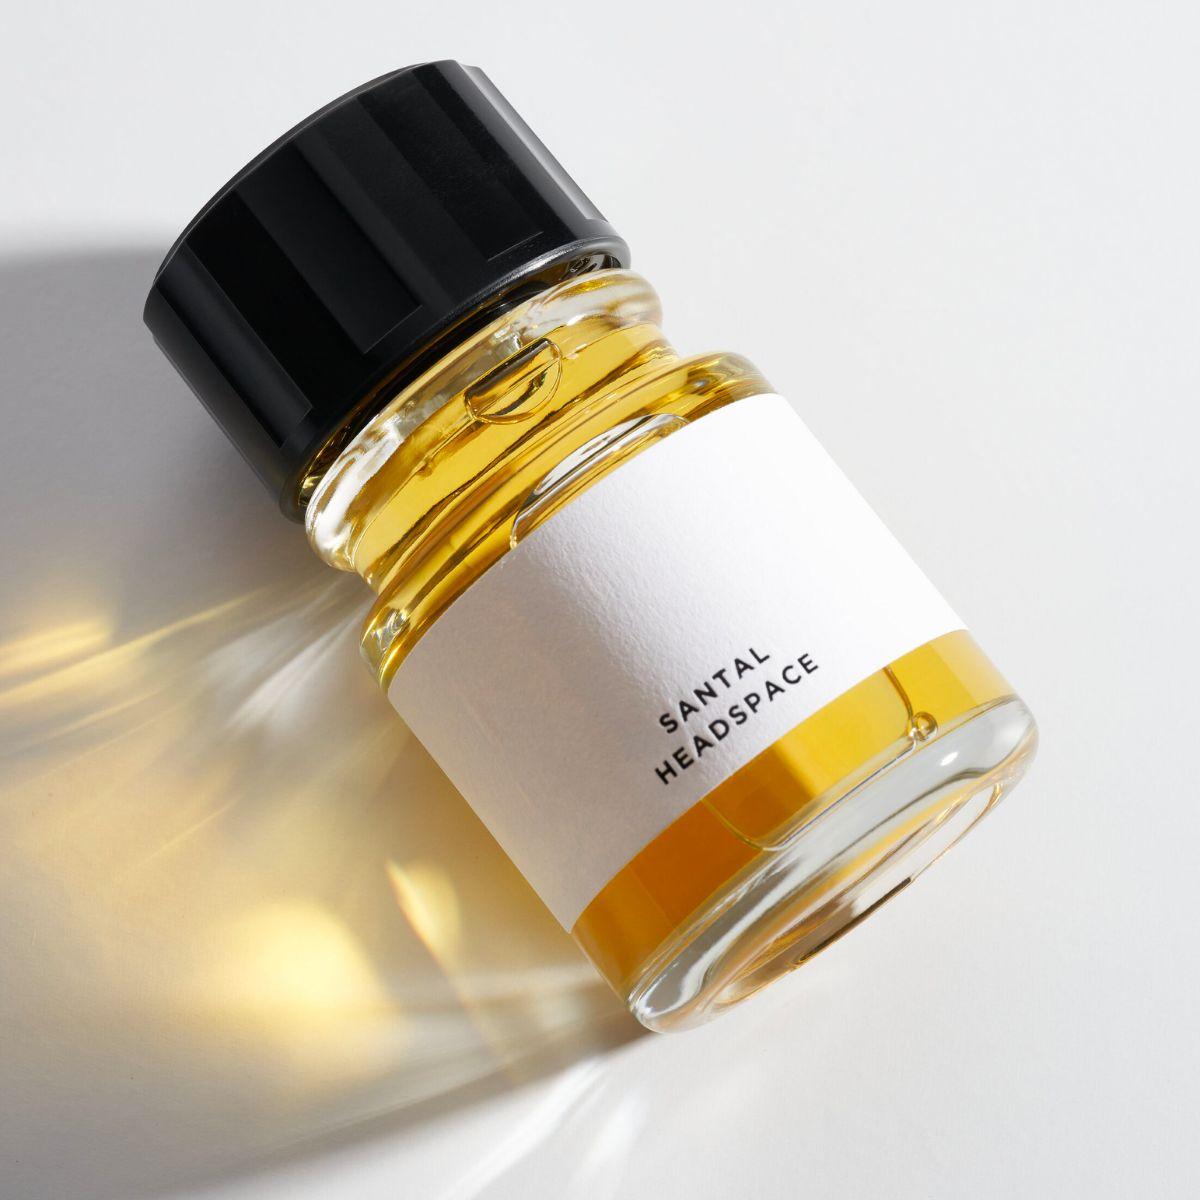 Image of Santal eau de parfum 100 ml by the brand Headspace